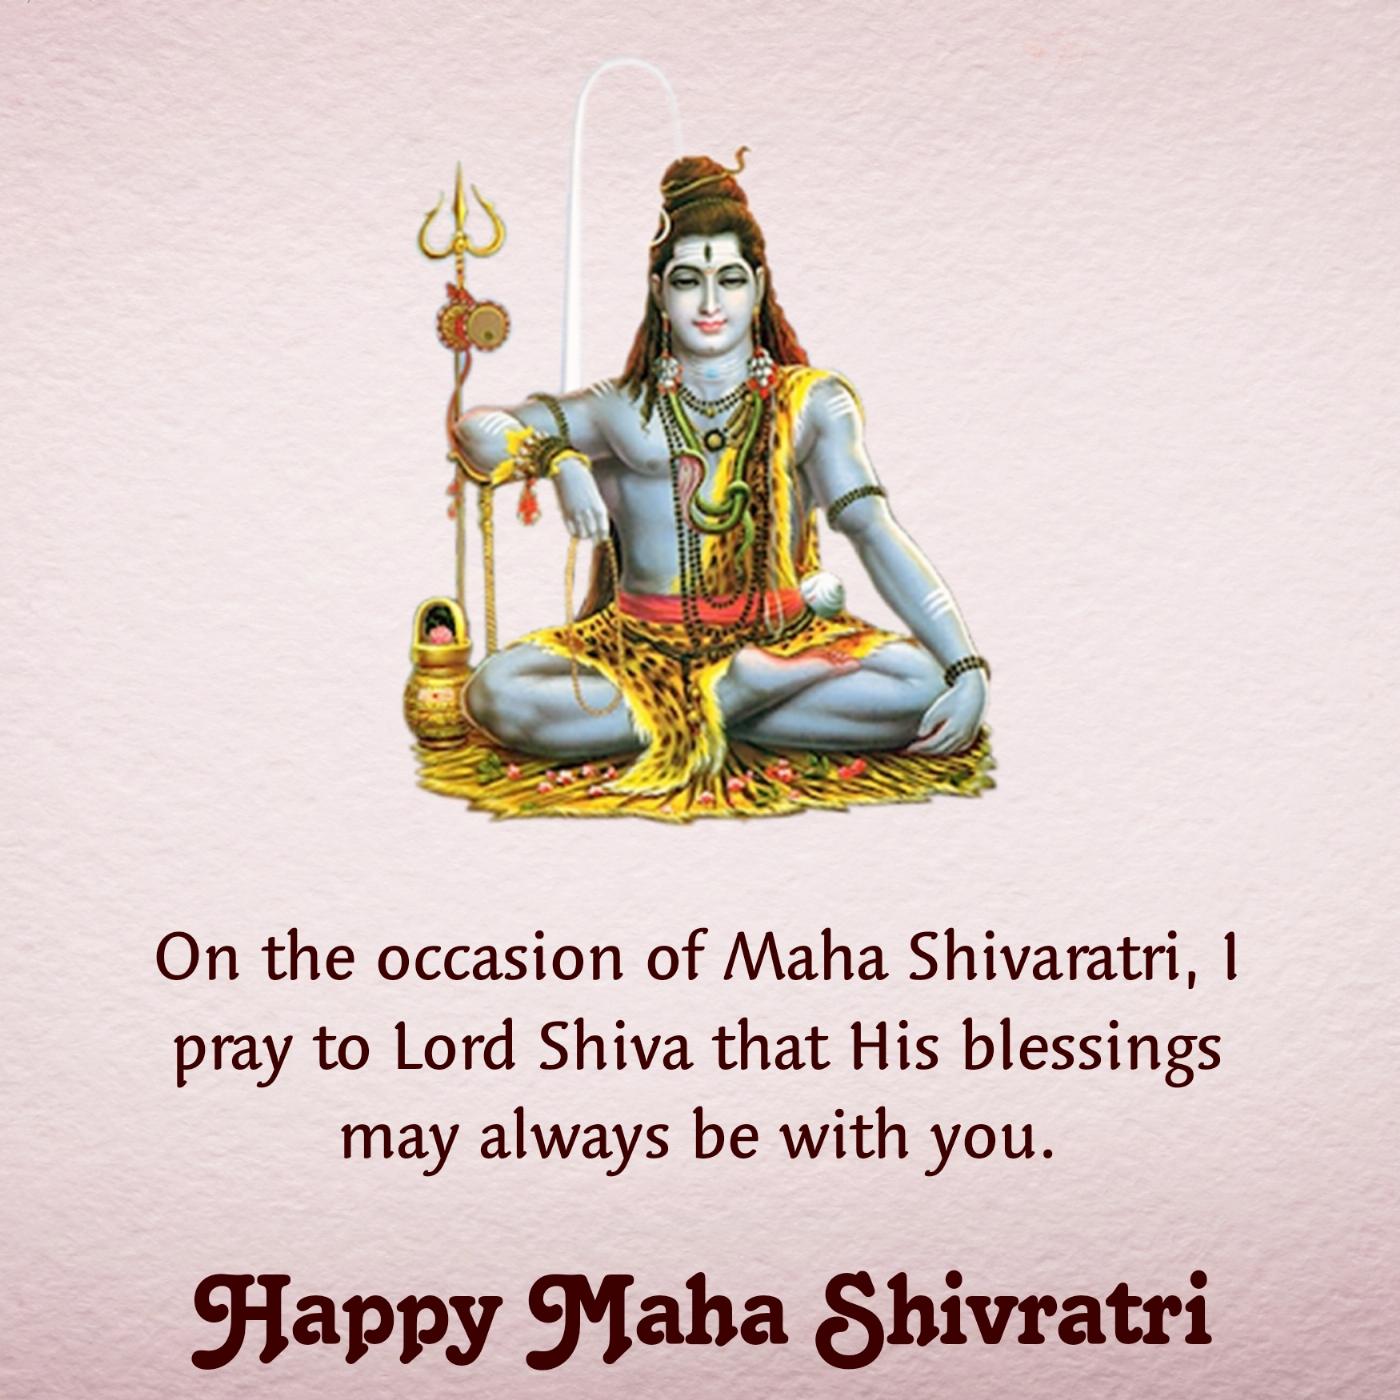 On the occasion of Maha Shivaratri I pray to Lord Shiva